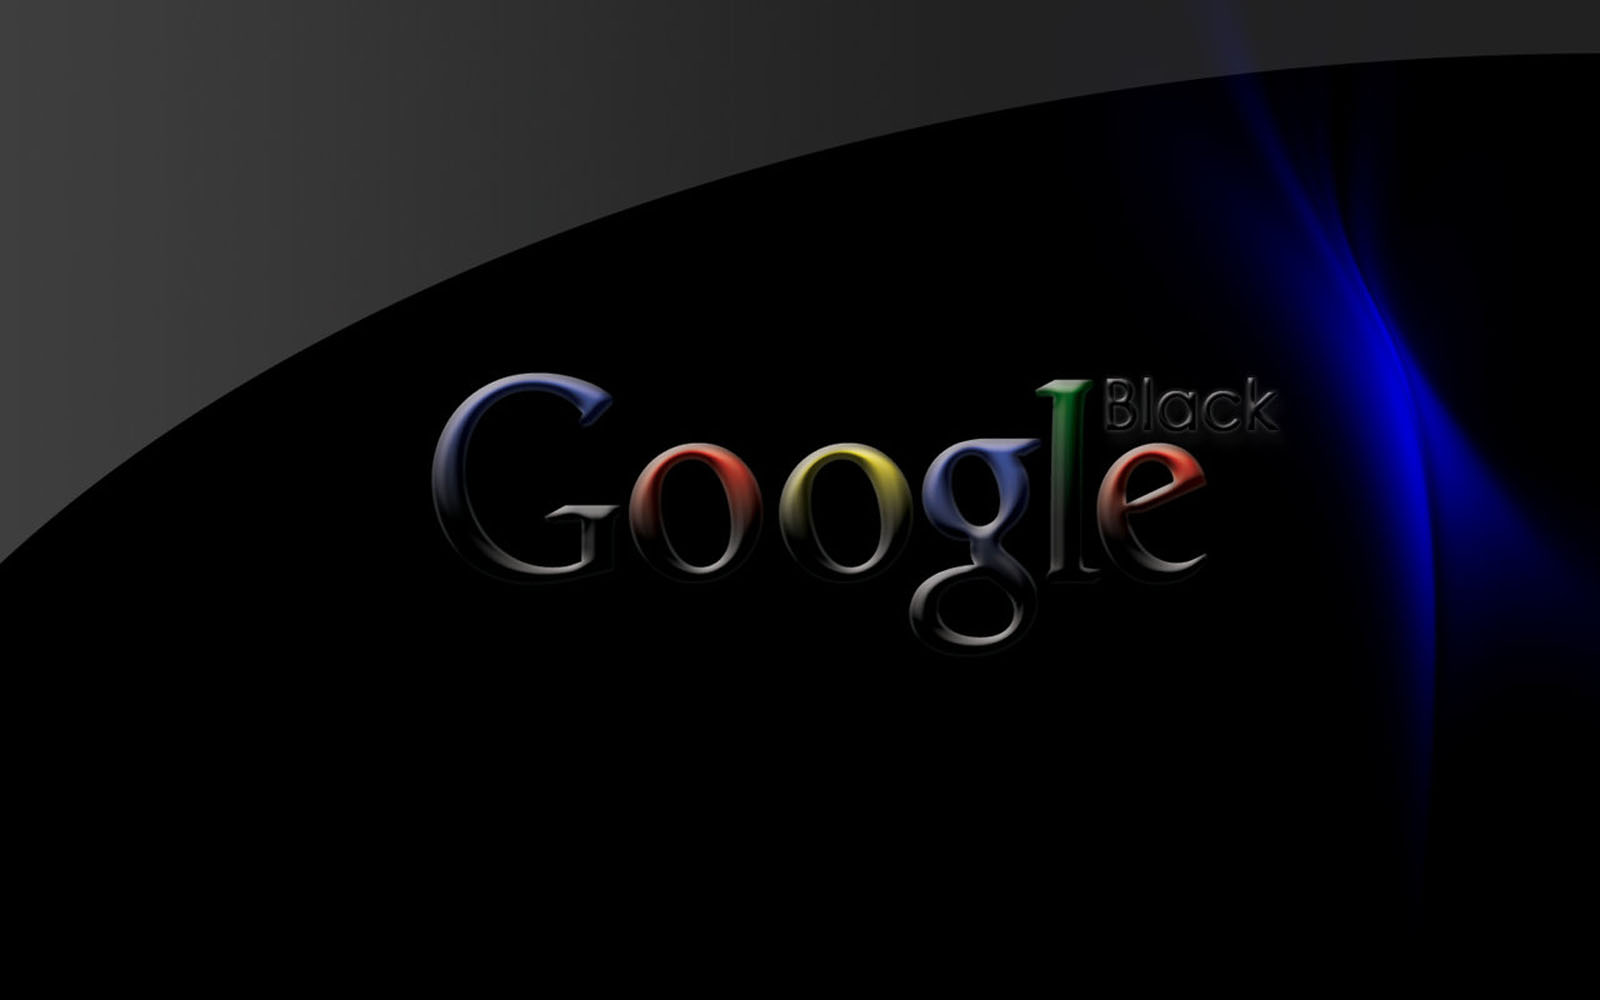 Tải hình nền đen Google miễn phí [1600x1000]: Các tín đồ yêu thích màu đen sẽ rất thích thú với bộ sưu tập hình nền Google mà chúng tôi cung cấp. Với độ phân giải 1600x1000, hình nền đen Google sẽ giúp cho màn hình của bạn trở nên đẹp mắt và hiện đại hơn bao giờ hết. Hãy tải về ngay!